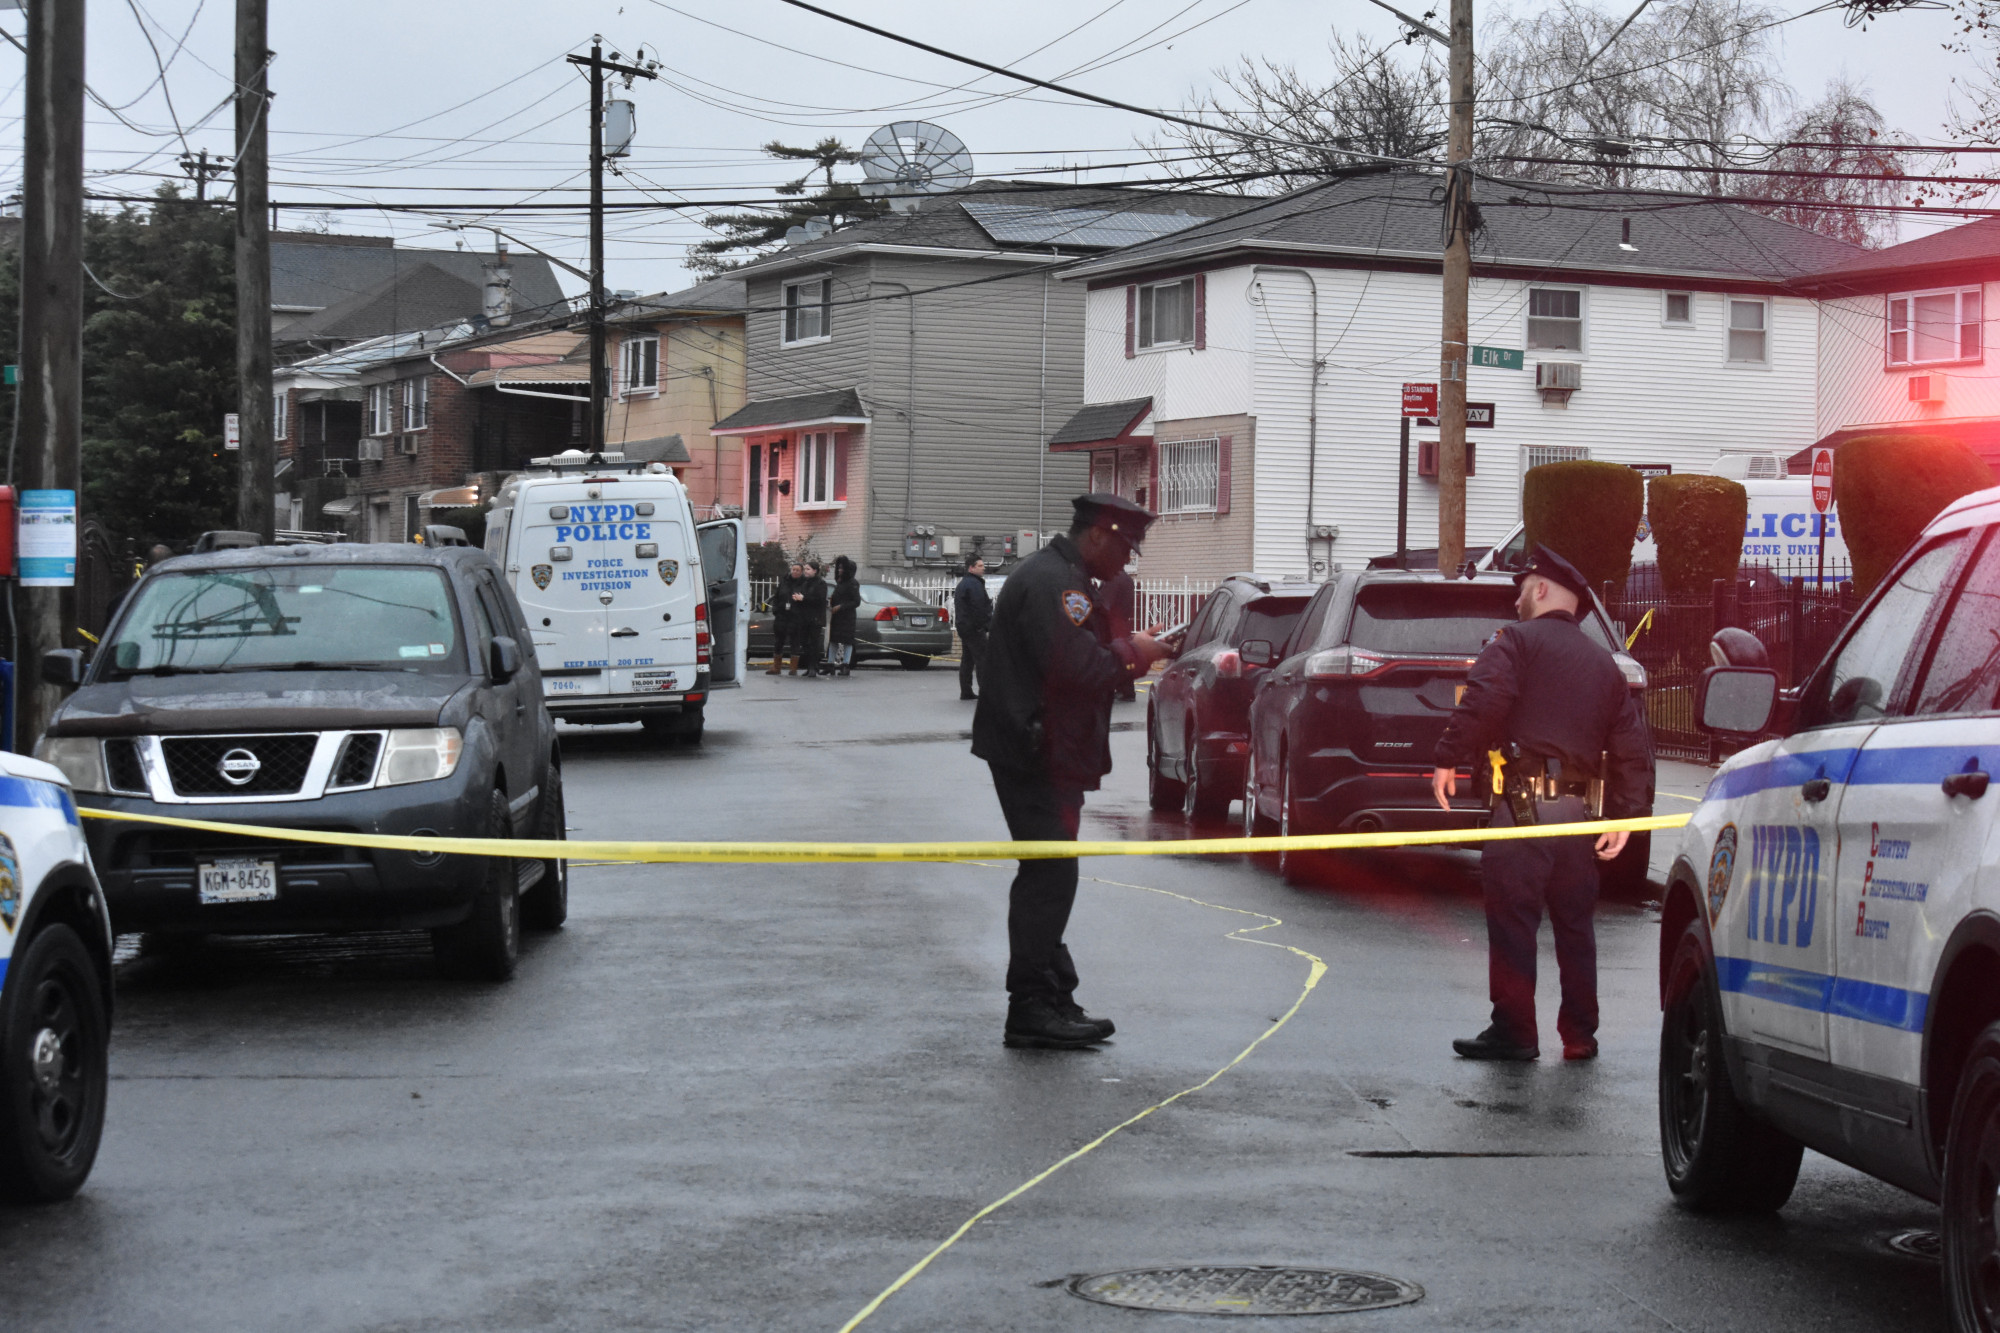 Lemészárolt egy családot, felgyújtotta a lakásukat, majd késsel támadt a kiérkező rendőrökre egy férfi Queensben